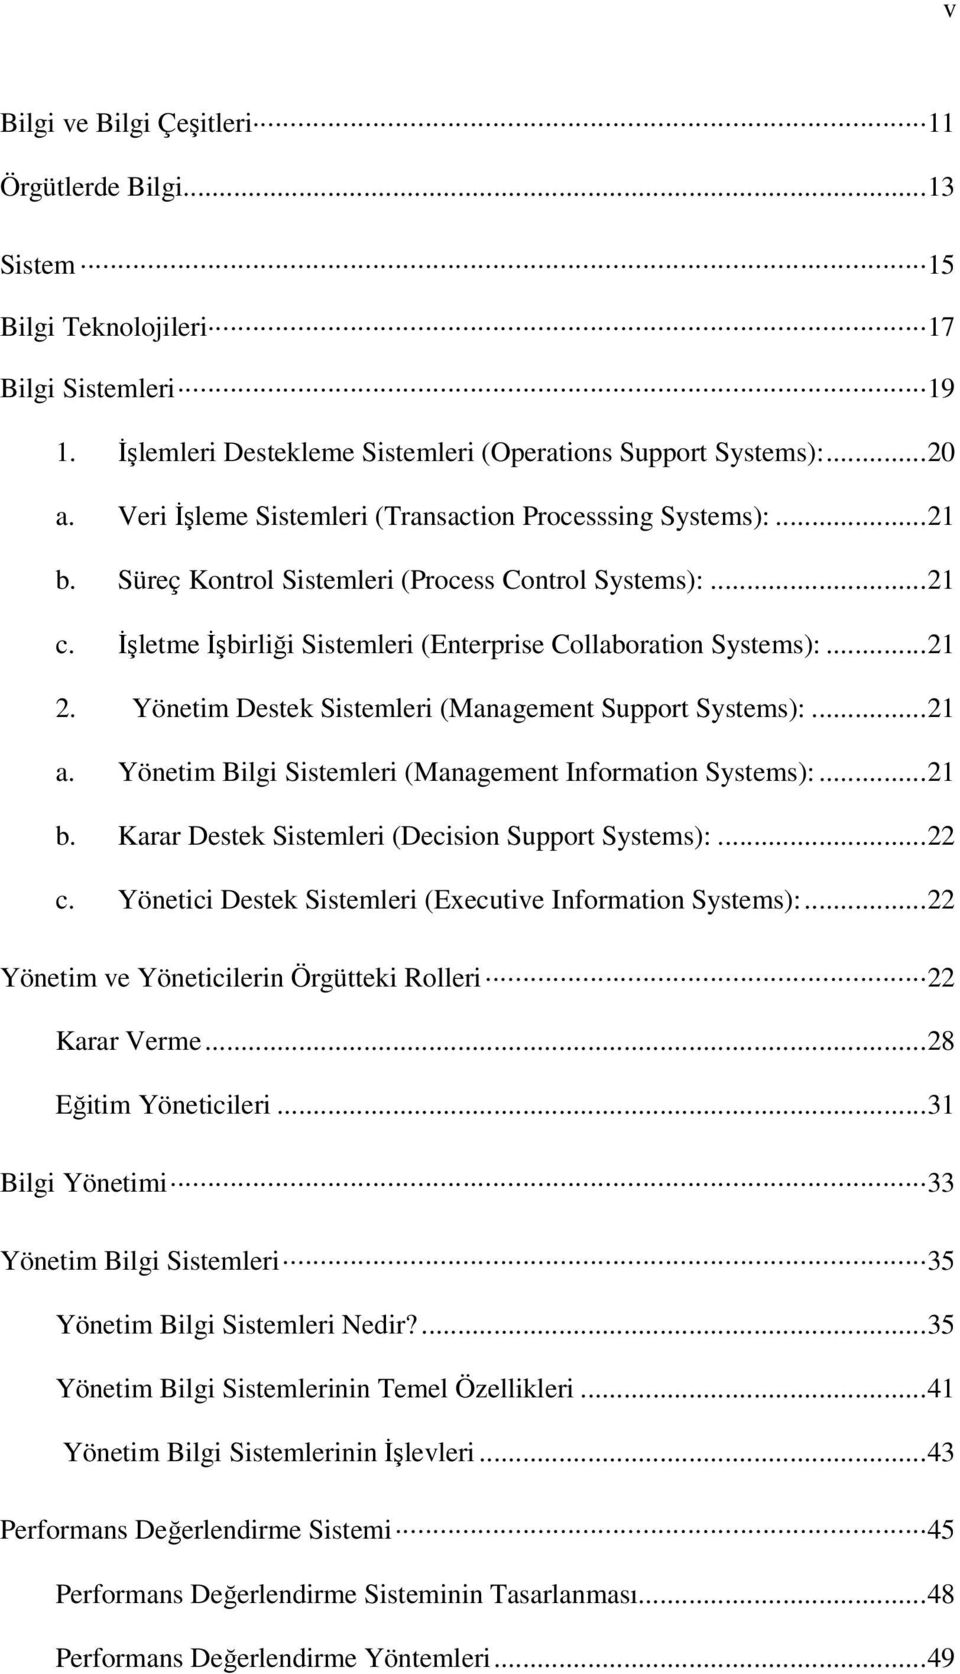 Yönetim Destek Sistemleri (Management Support Systems):...21 a. Yönetim Bilgi Sistemleri (Management Information Systems):...21 b. Karar Destek Sistemleri (Decision Support Systems):...22 c.